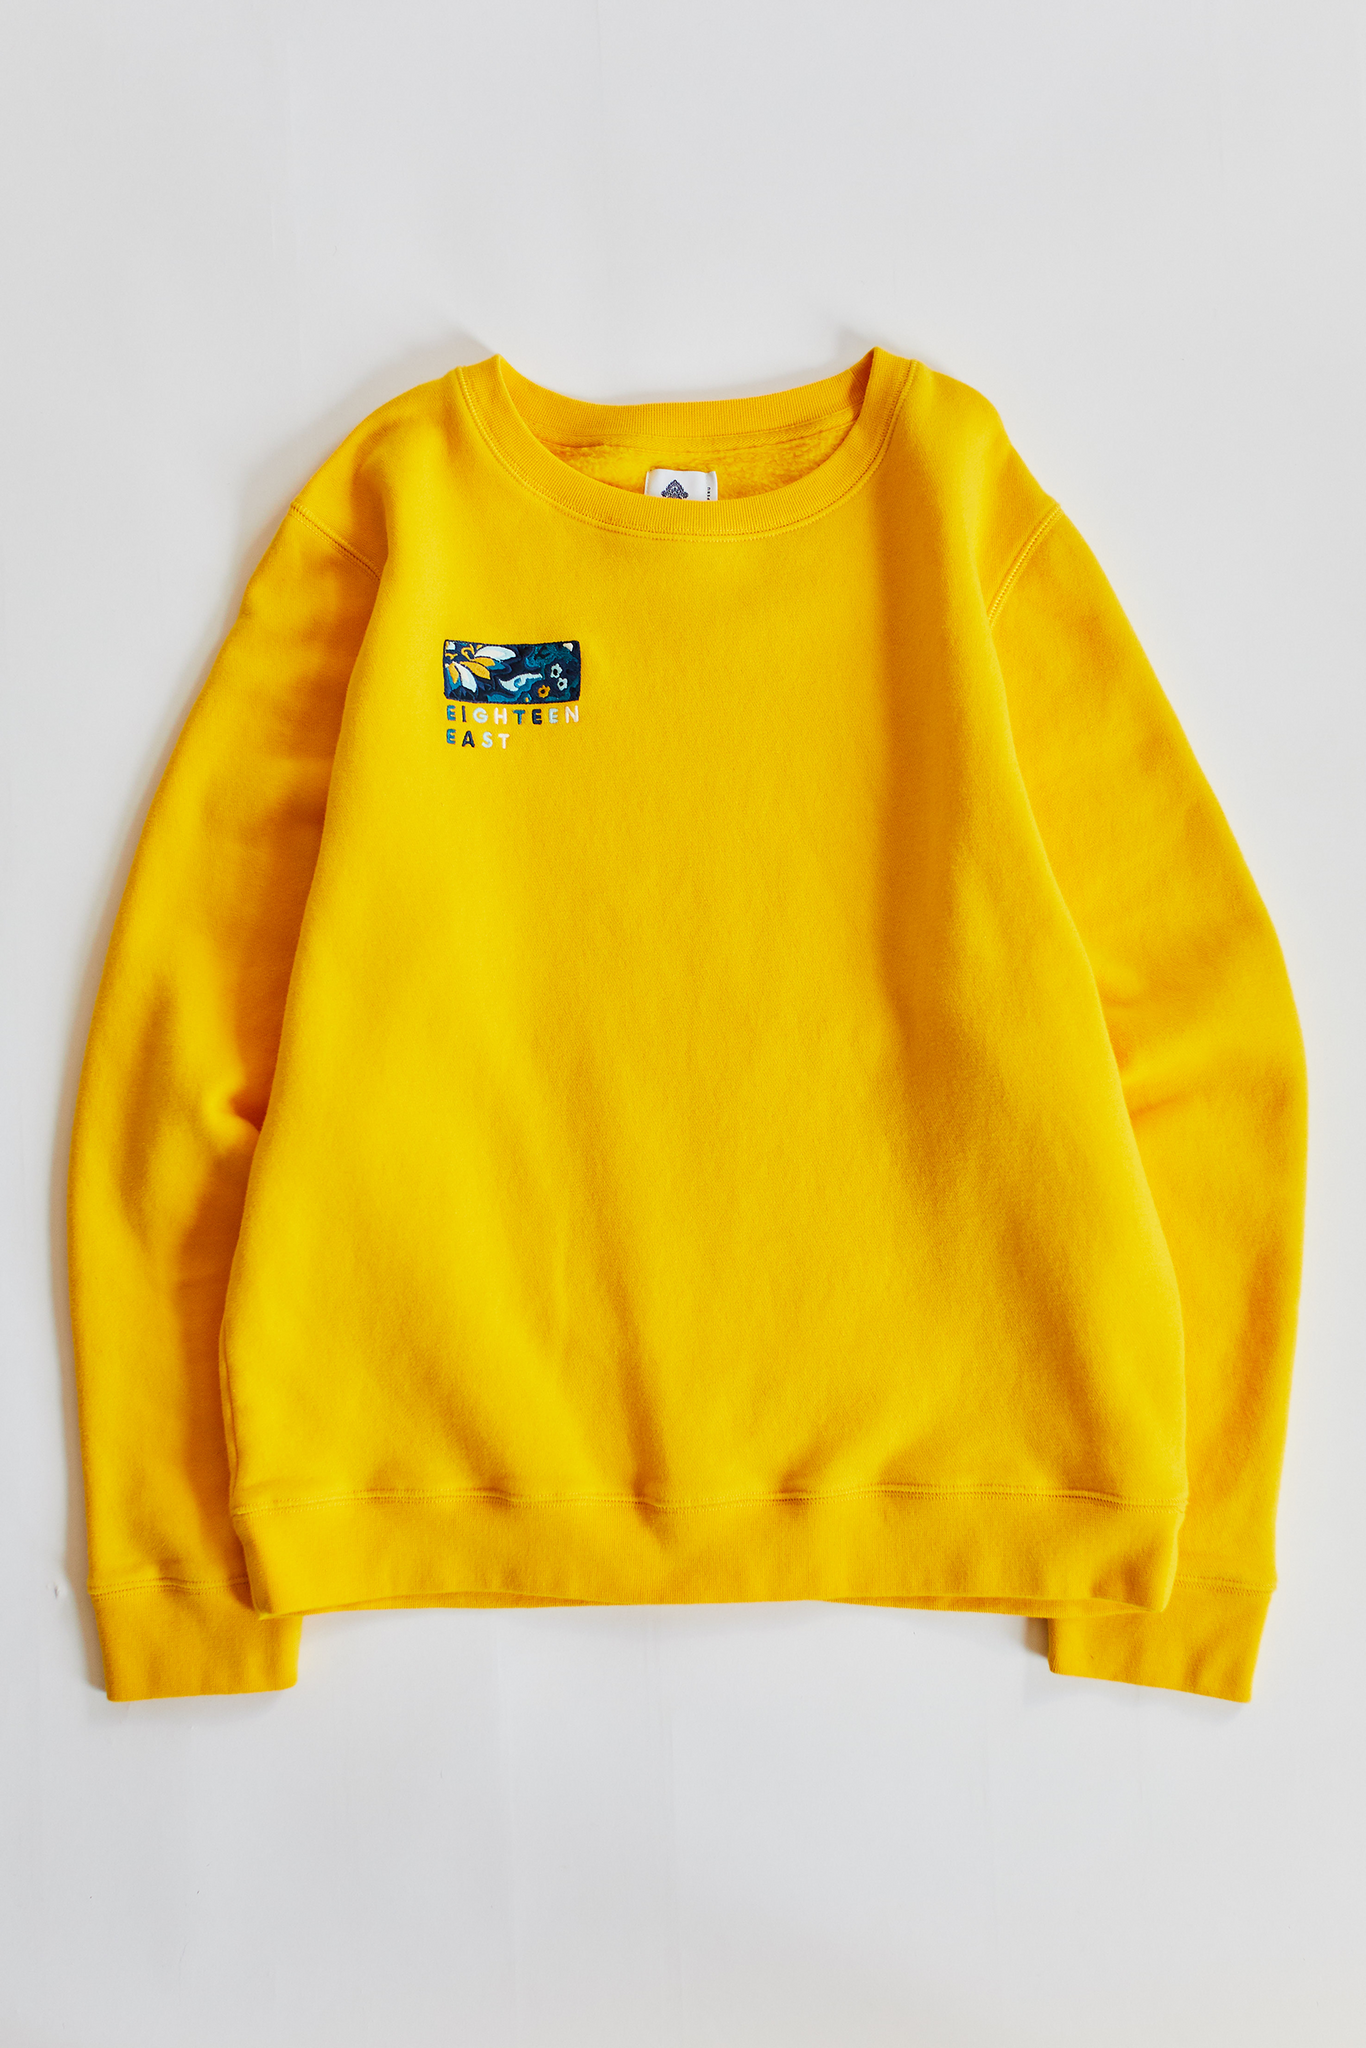 sweatshirt_yellow_1024x1024@2x.png